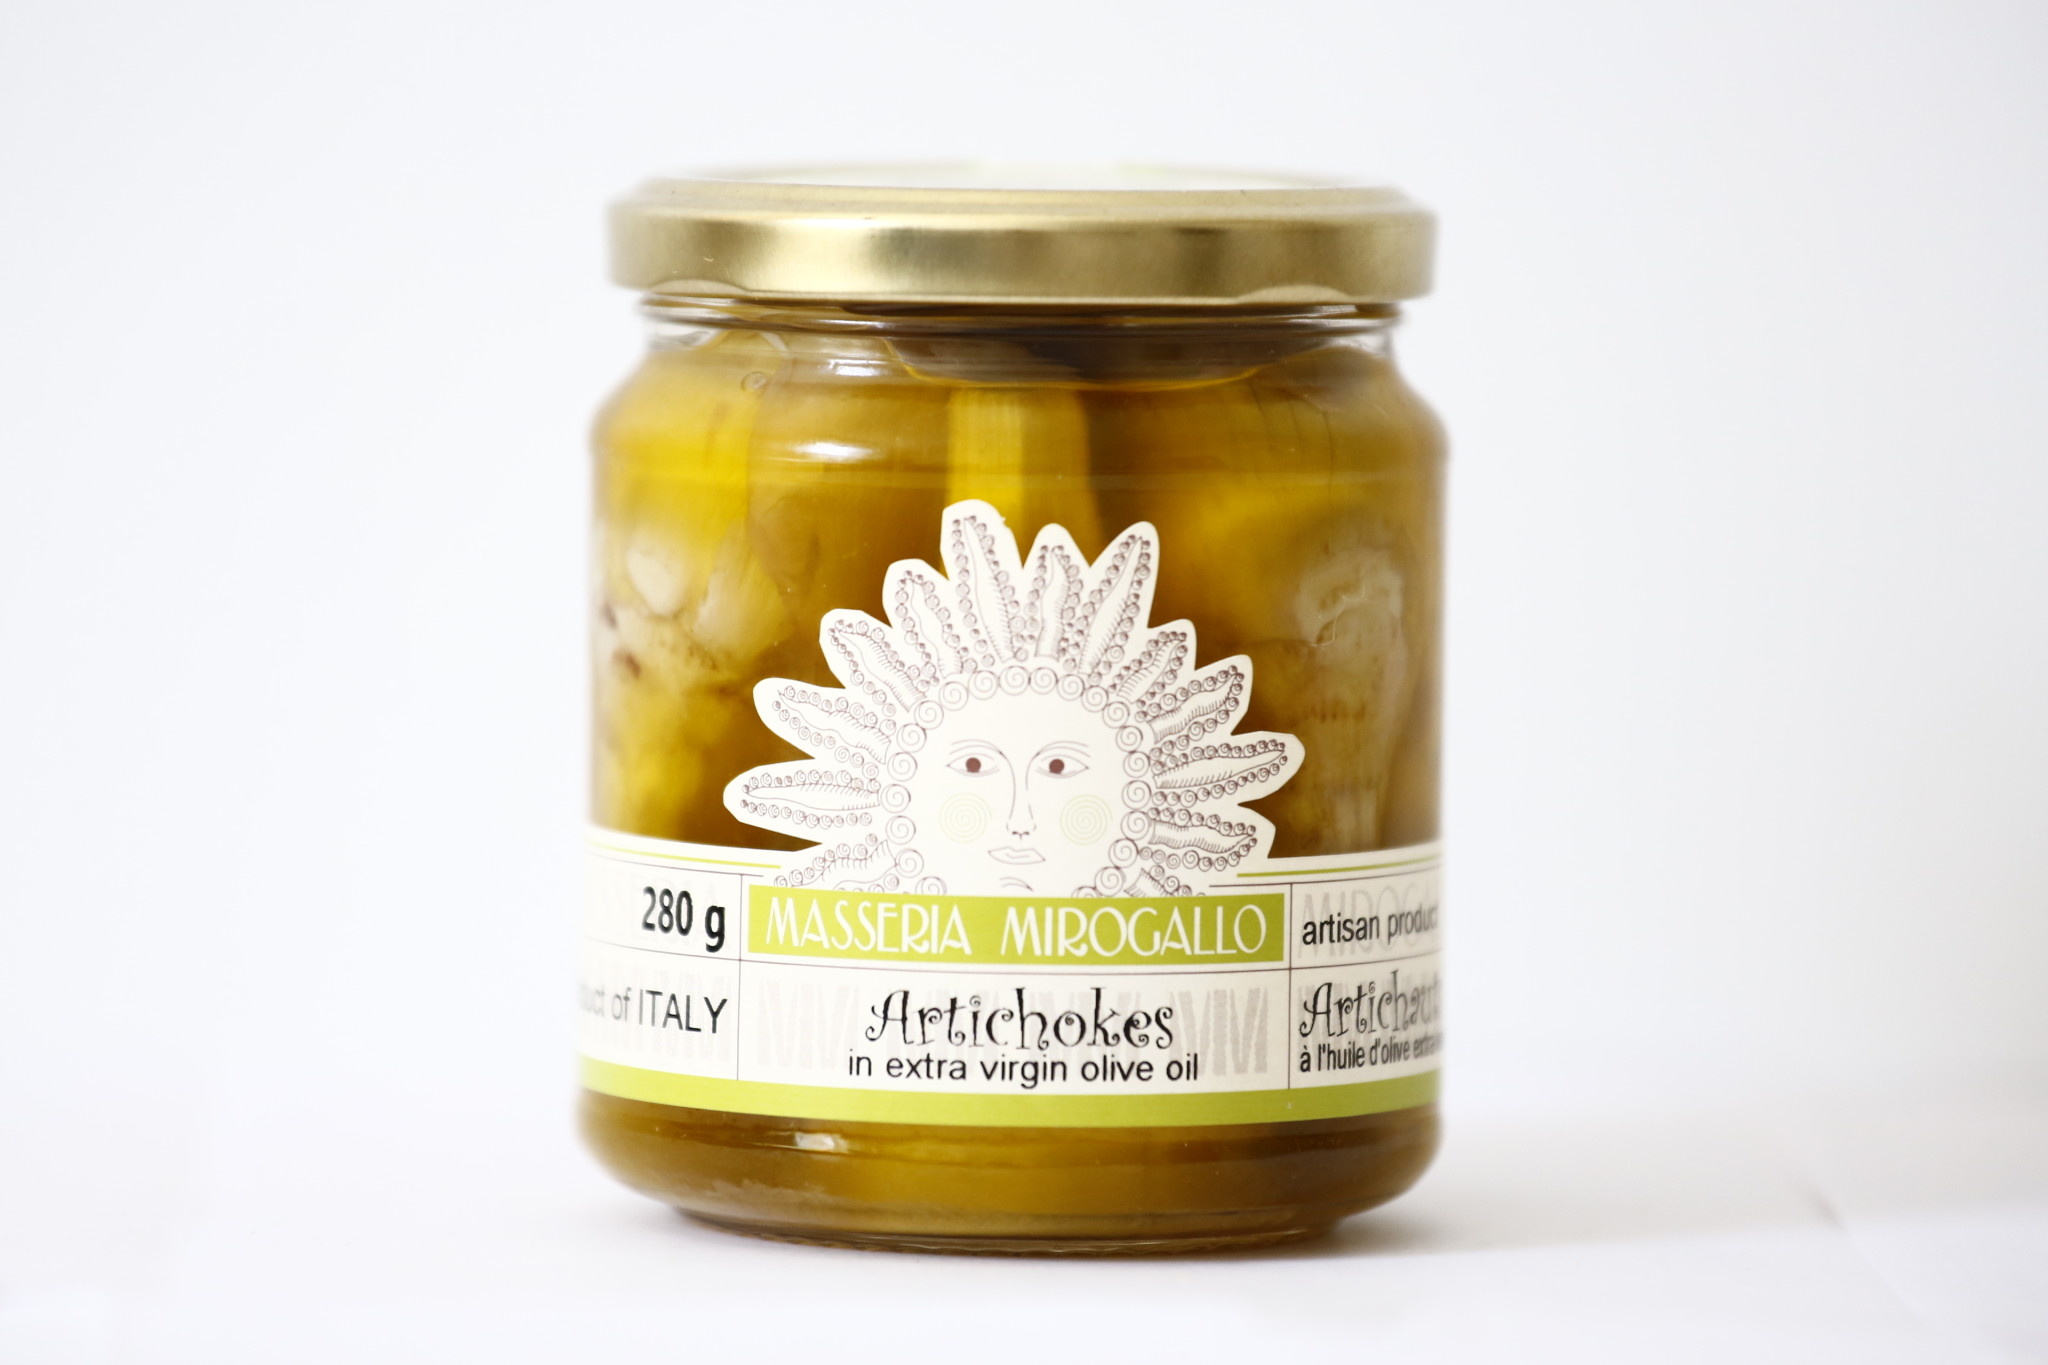 Masseria Mirogallo "Mirogallo" Pickled in EVOO - Artichoke "Carcofi in Olio" 8/280g